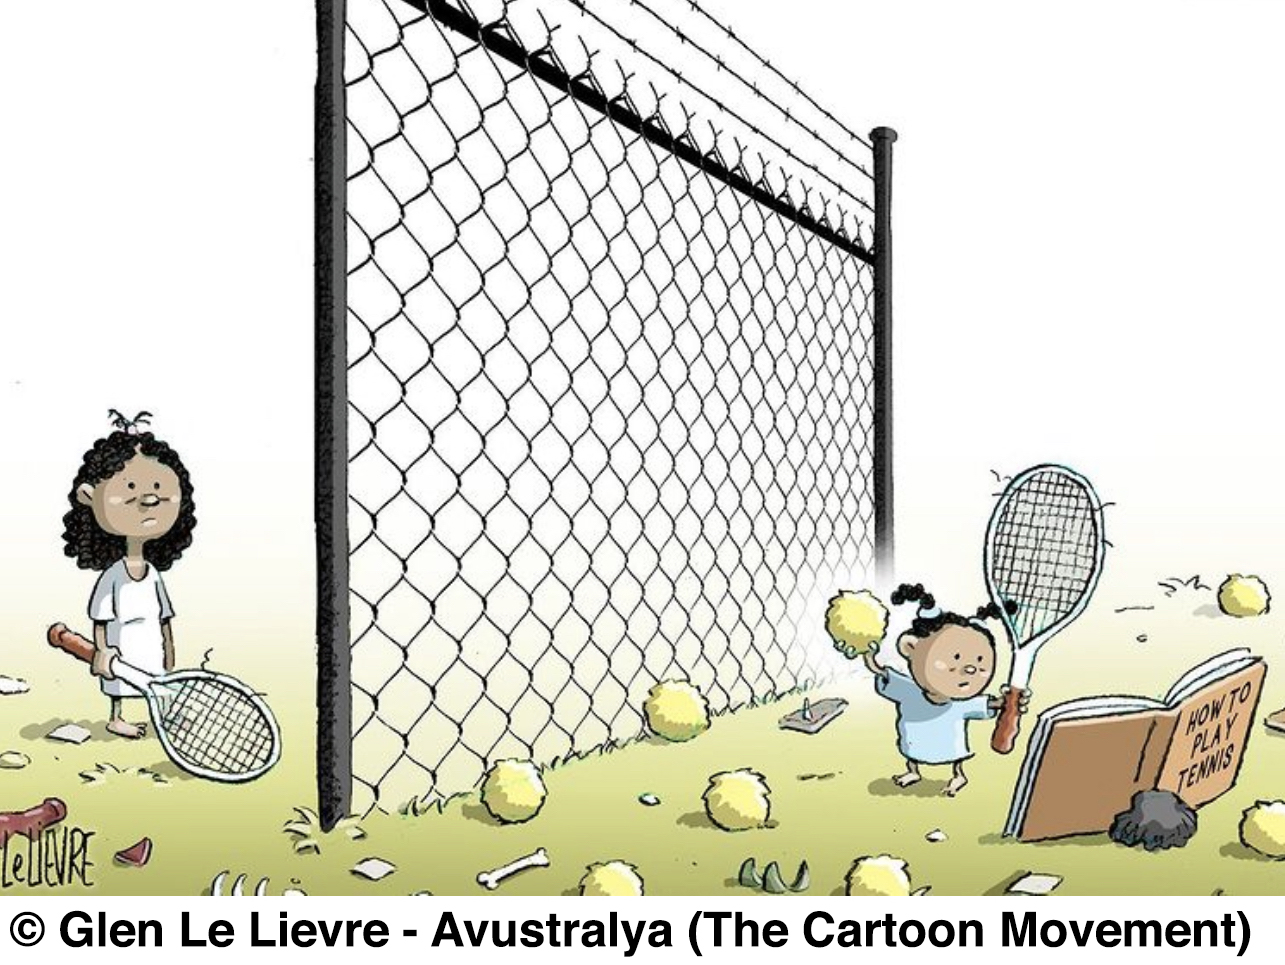 Le Lievre'in karikatürü